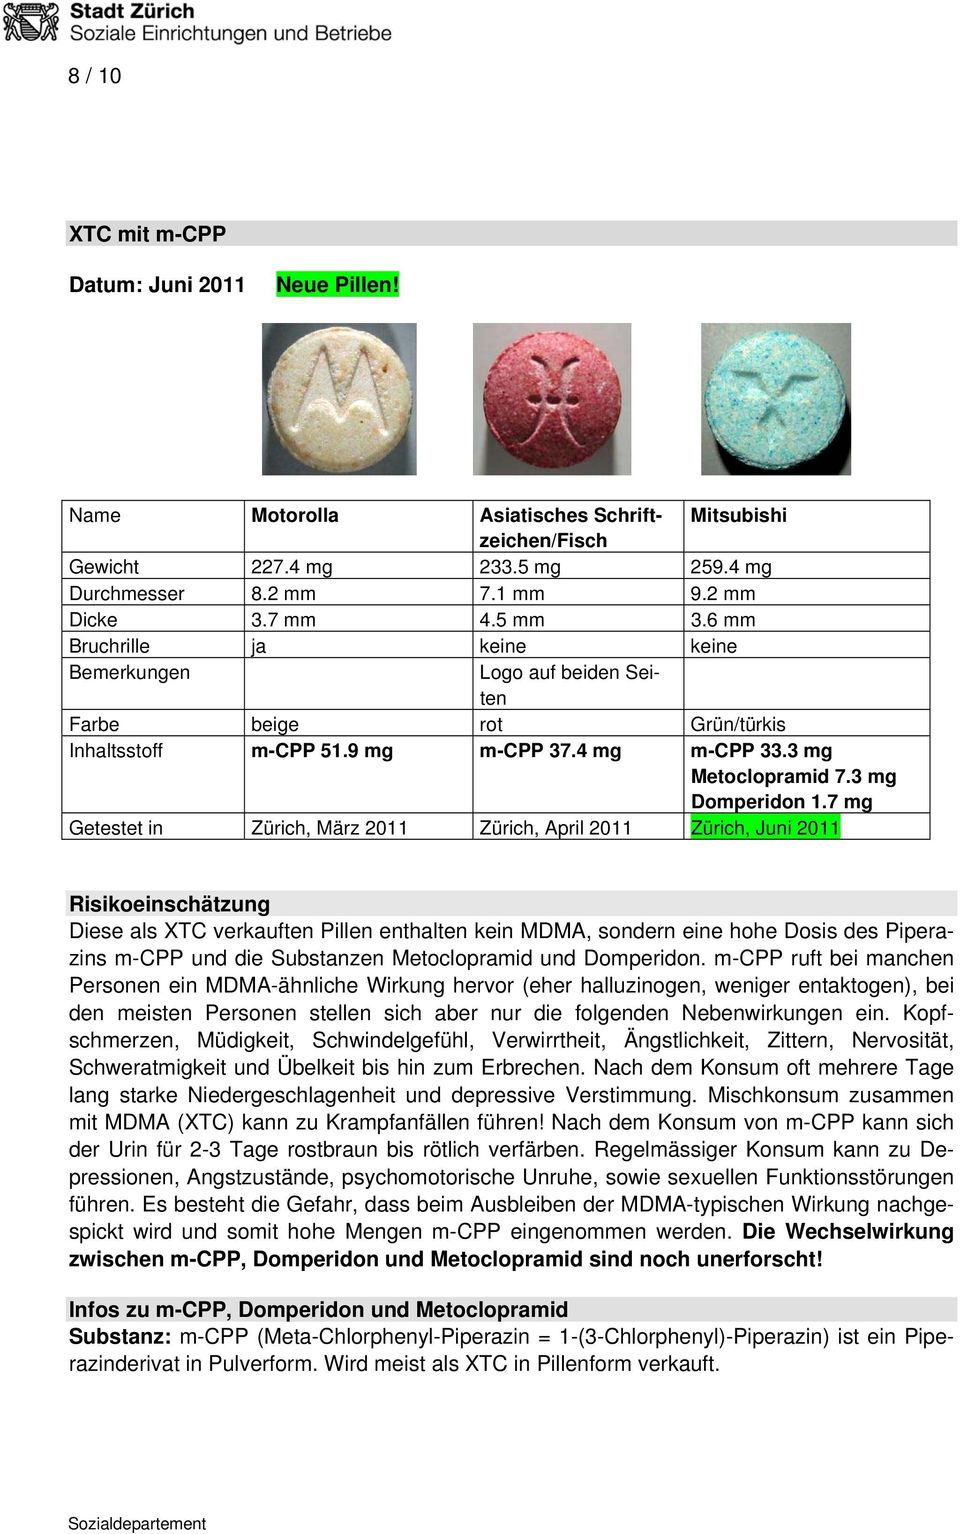 7 mg Getestet in Zürich, März 2011 Zürich, April 2011 Zürich, Juni 2011 Risikoeinschätzung Diese als XTC verkauften Pillen enthalten kein MDMA, sondern eine hohe Dosis des Piperazins m-cpp und die